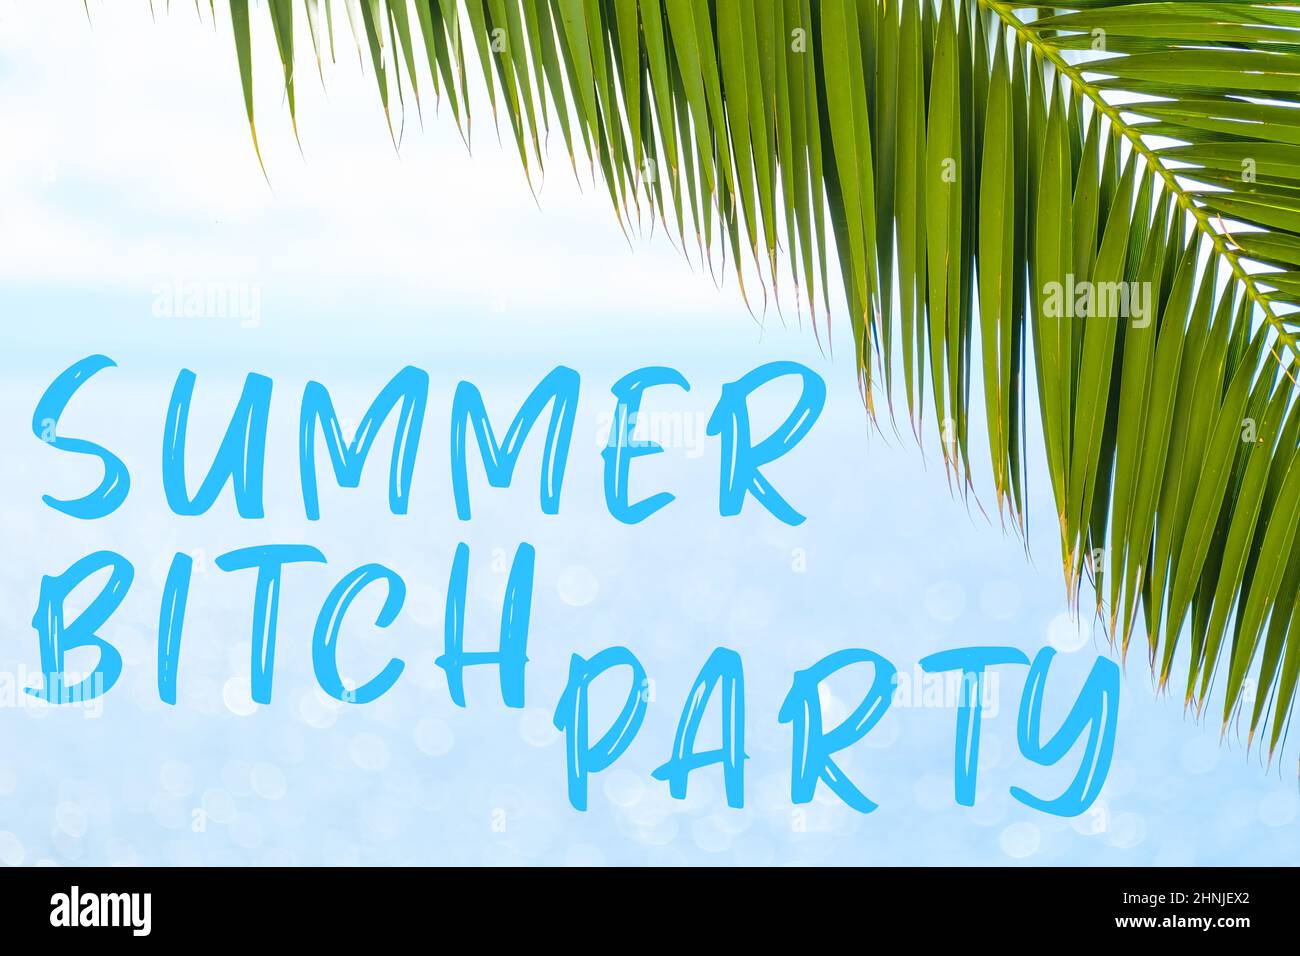 Sommer Hündin Party Nachricht in eleganter Schrift auf dem Hintergrund mit Palmblatt und blauem Meer geschrieben. Urlaubskonzept und Werbung der Reiseagentur. Stockfoto